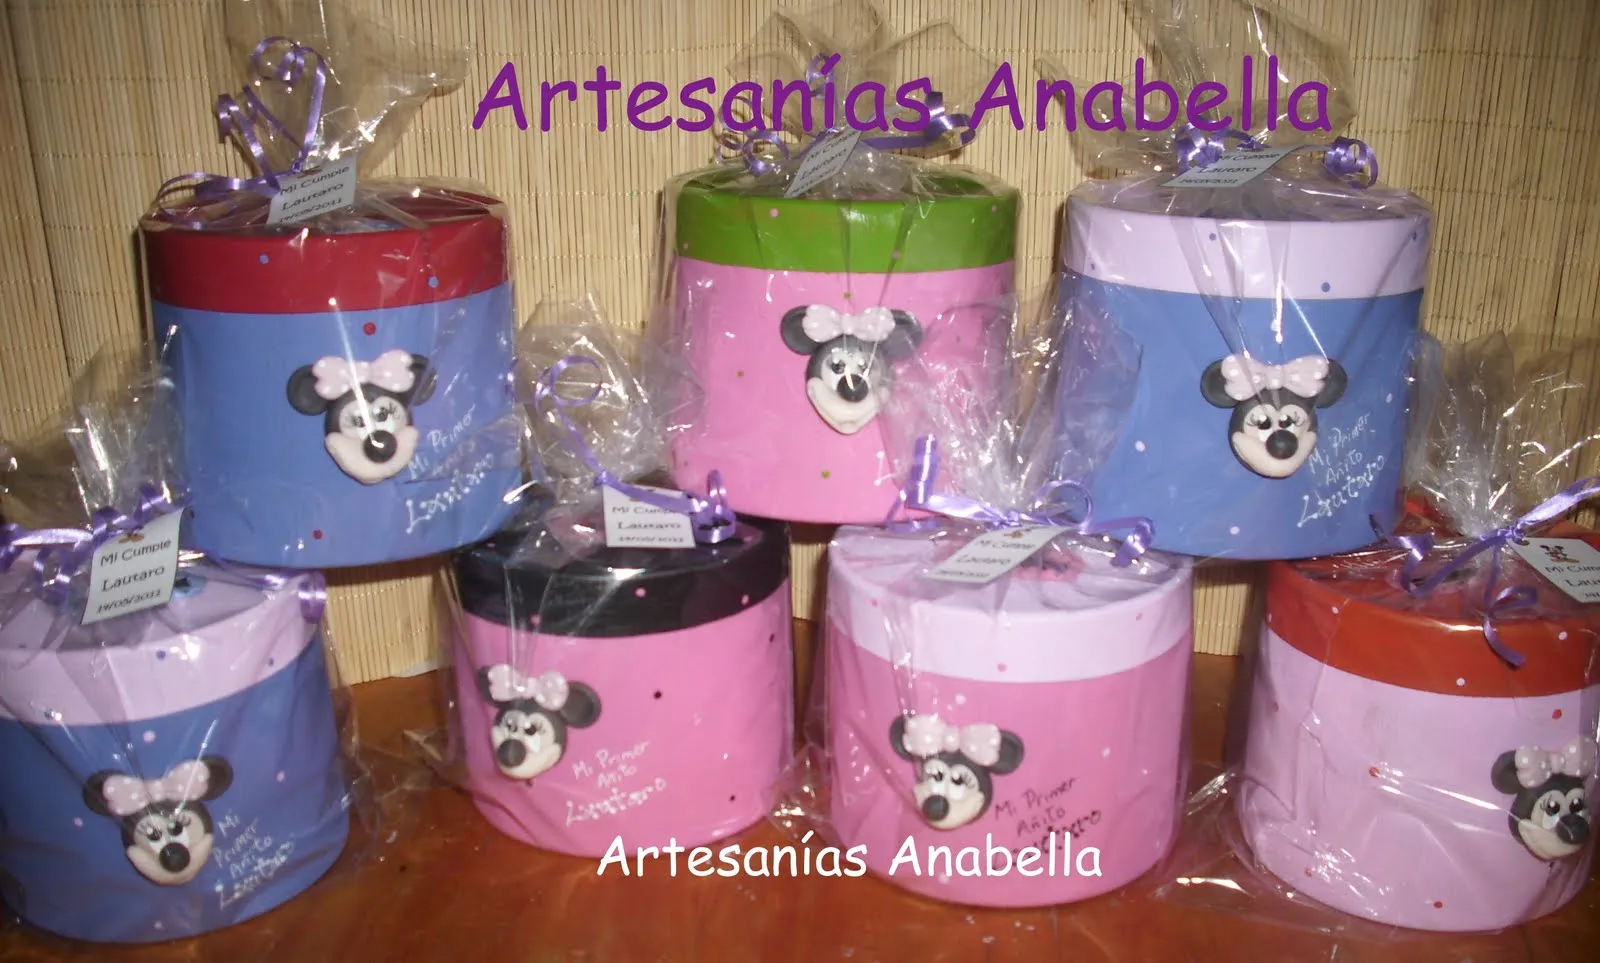  ... Anabella: Souvenirs Mickey y Minnie en alcancías y portarretratos